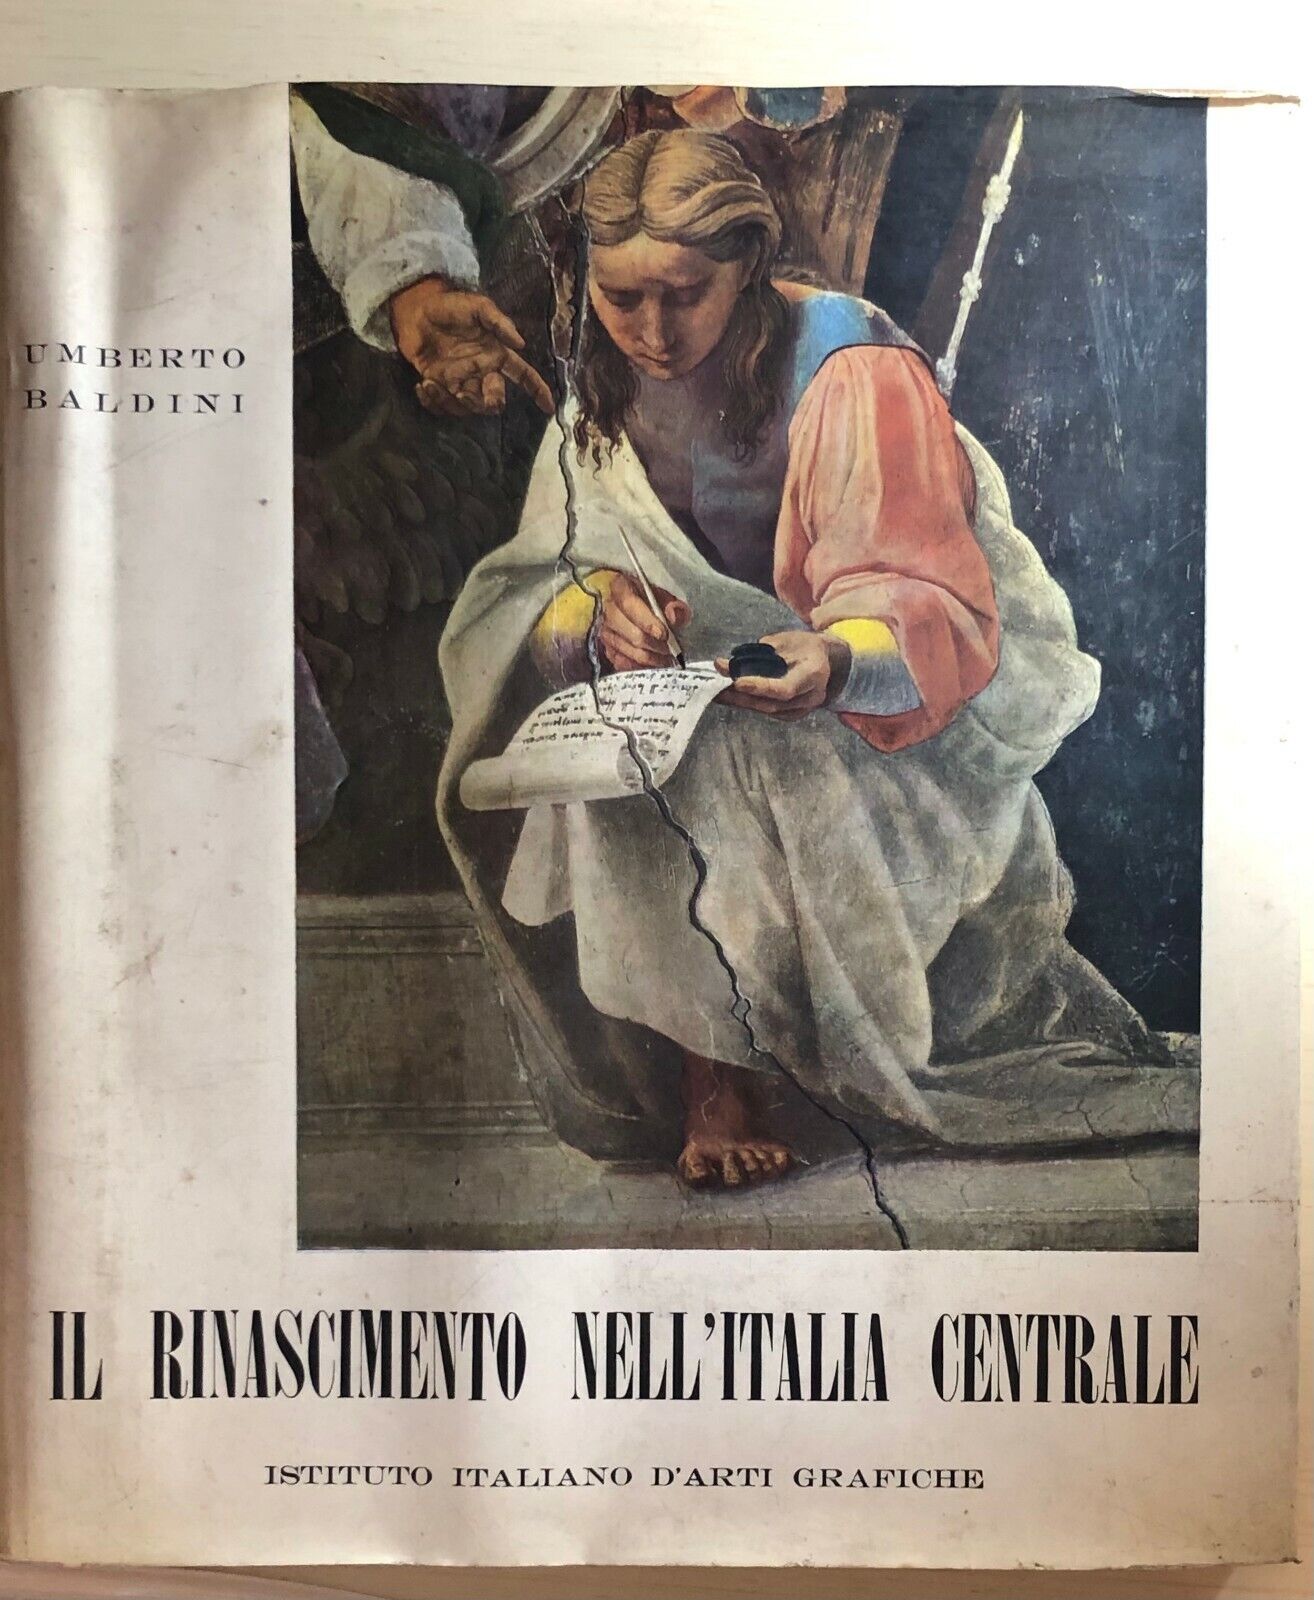 Il Rinascimento nelL'Italia Centrale di Umberto Baldini,  1962,  Istituto Italia